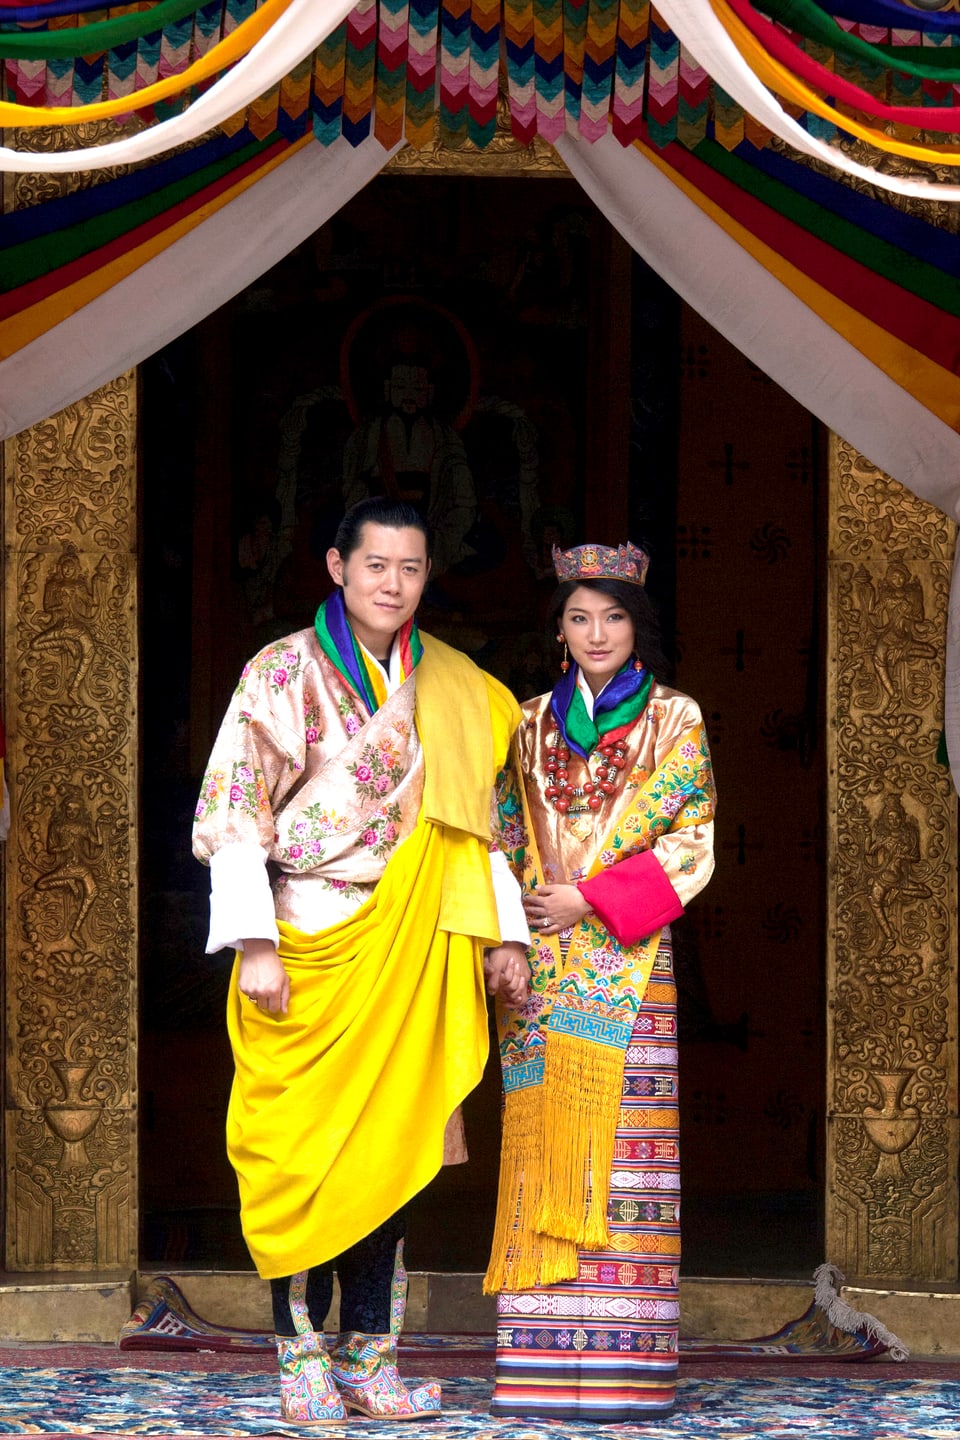 Mann und Frau in traditioneller Hochzeitskleidung.